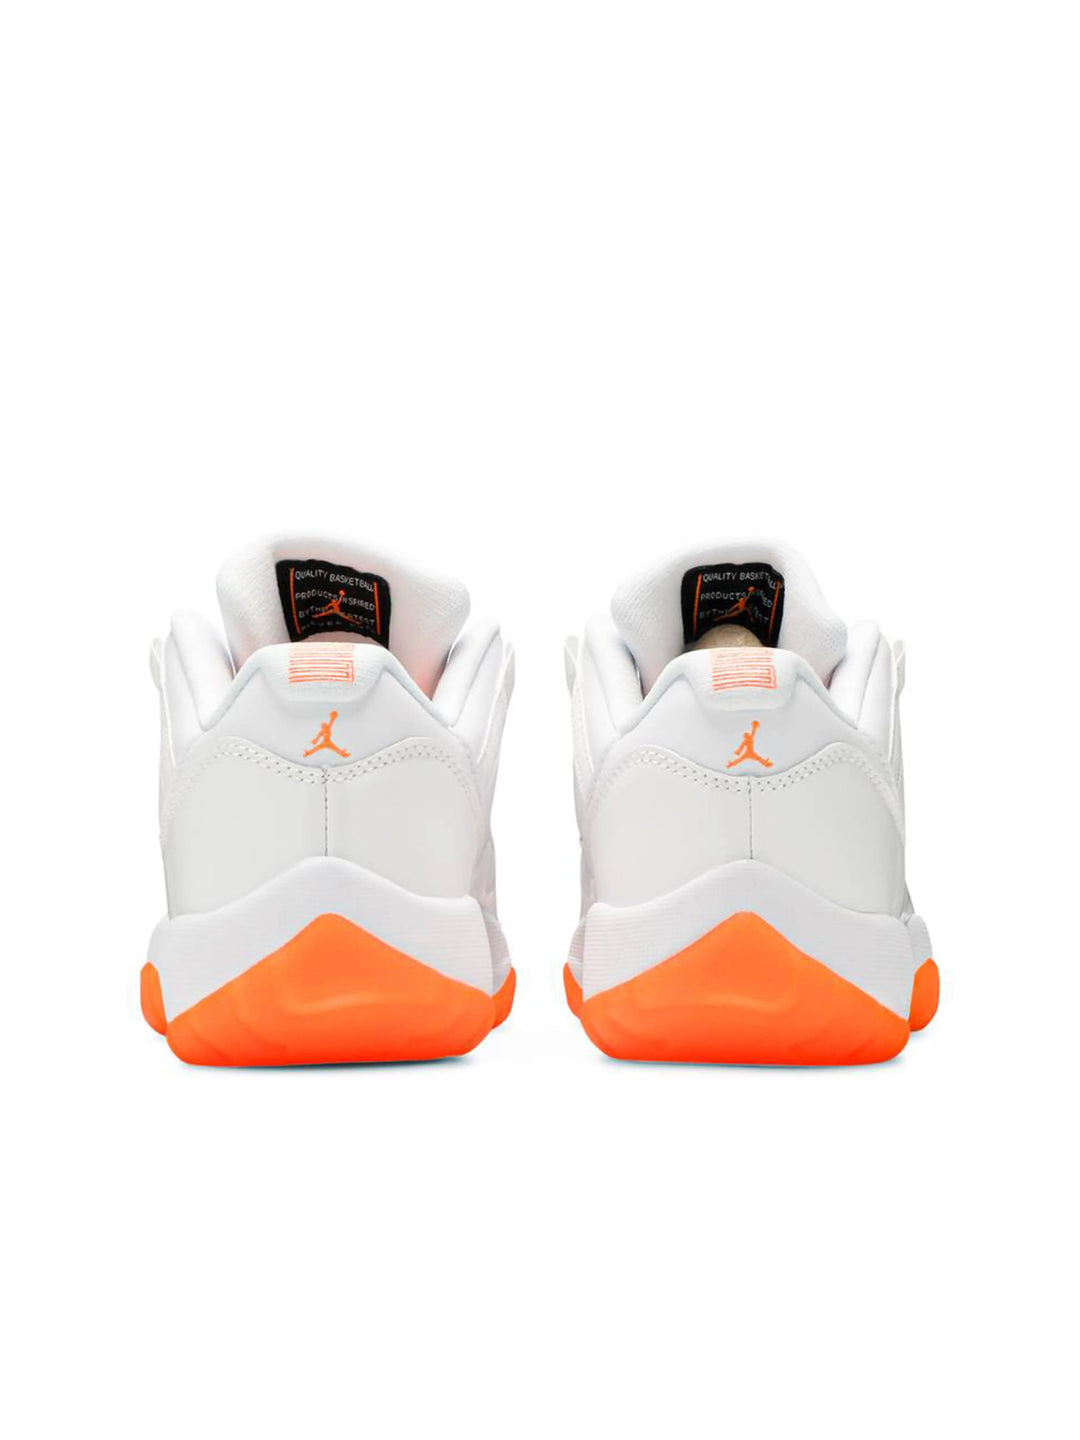 Nike Air Jordan 11 Low Citrus [2021] [W] Prior